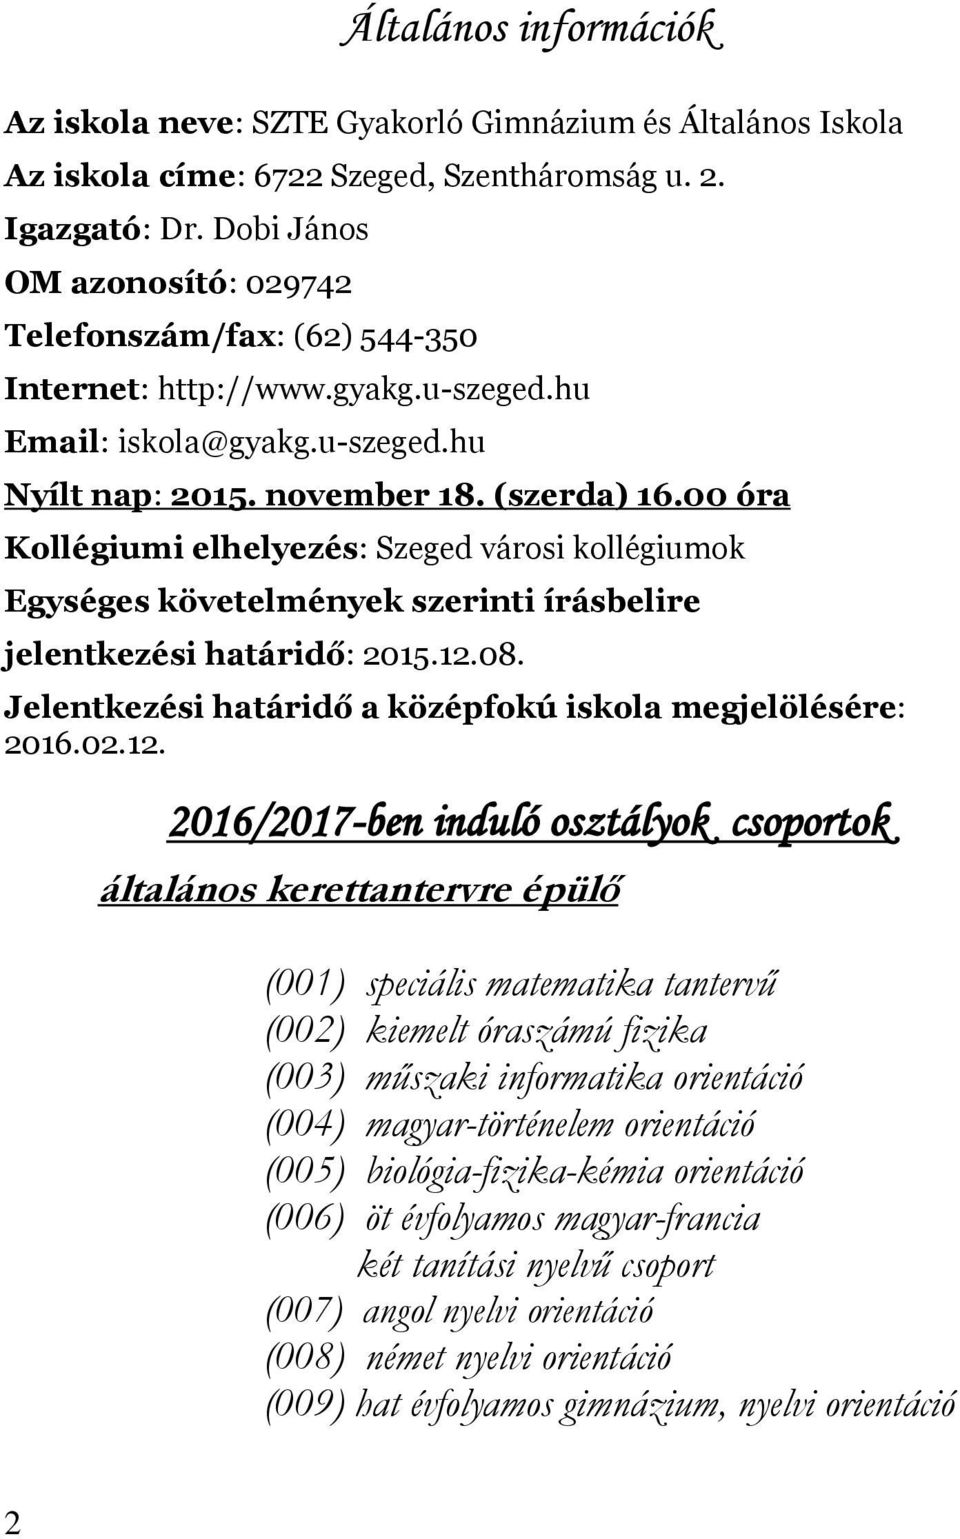 SZTE Gyakorló Gimnázium és Általános Iskola. Beiskolázási tájékoztató.  2016/2017-es tanév - PDF Free Download